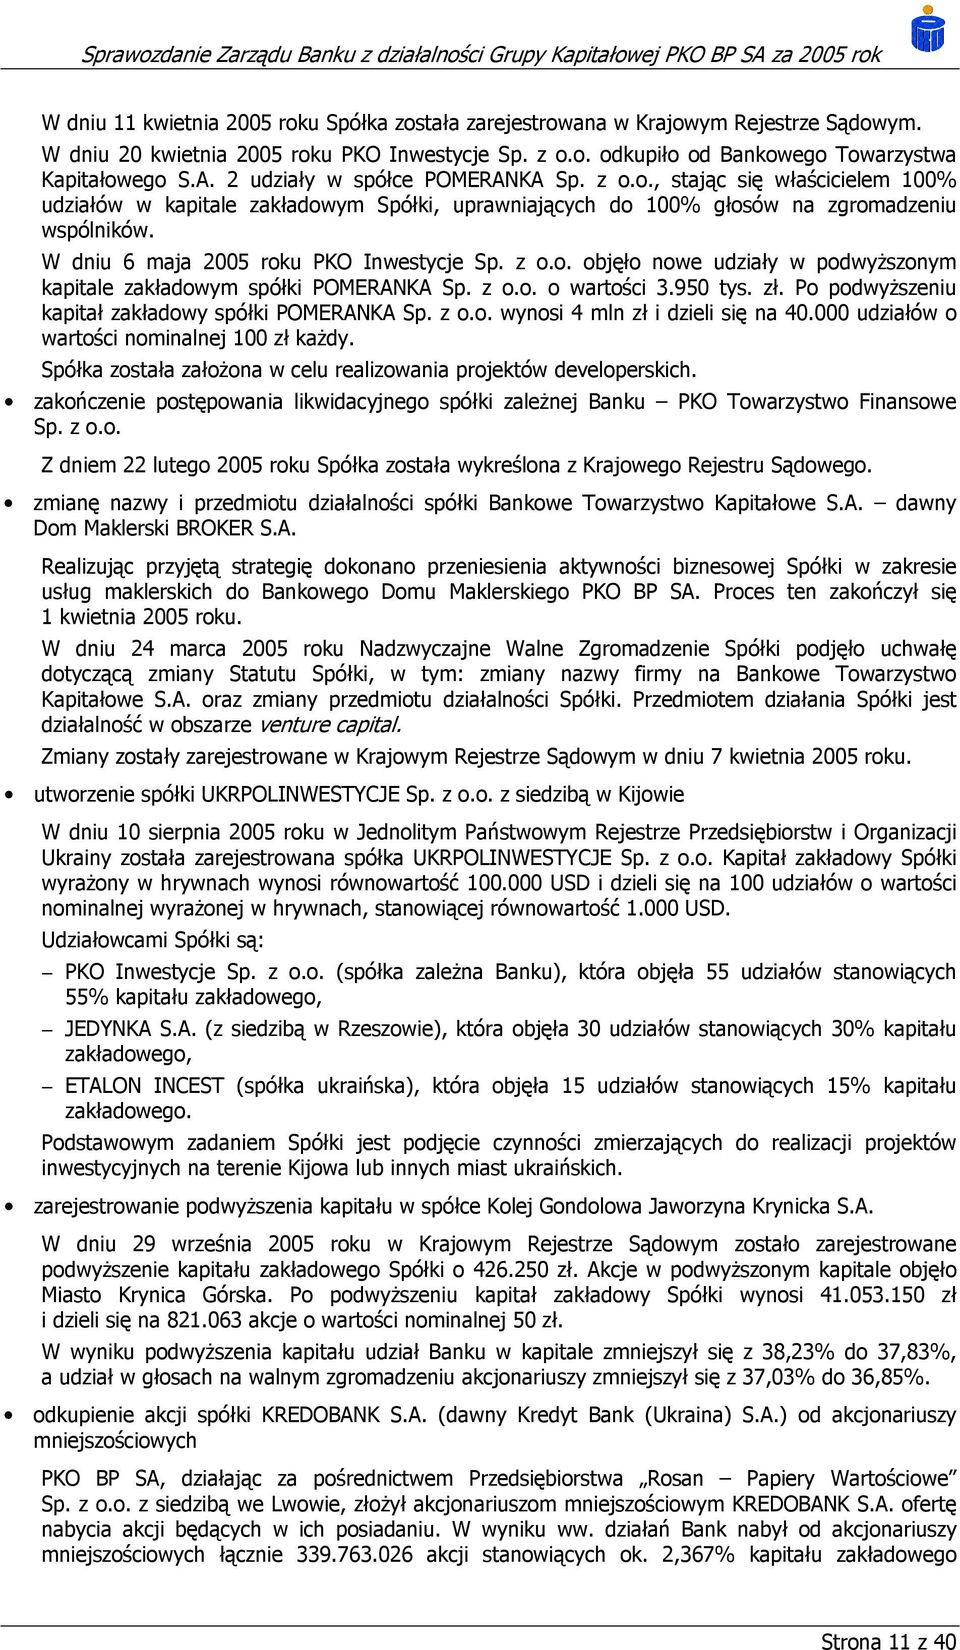 W dniu 6 maja 2005 roku PKO Inwestycje Sp. z o.o. objęło nowe udziały w podwyższonym kapitale zakładowym spółki POMERANKA Sp. z o.o. o wartości 3.950 tys. zł.